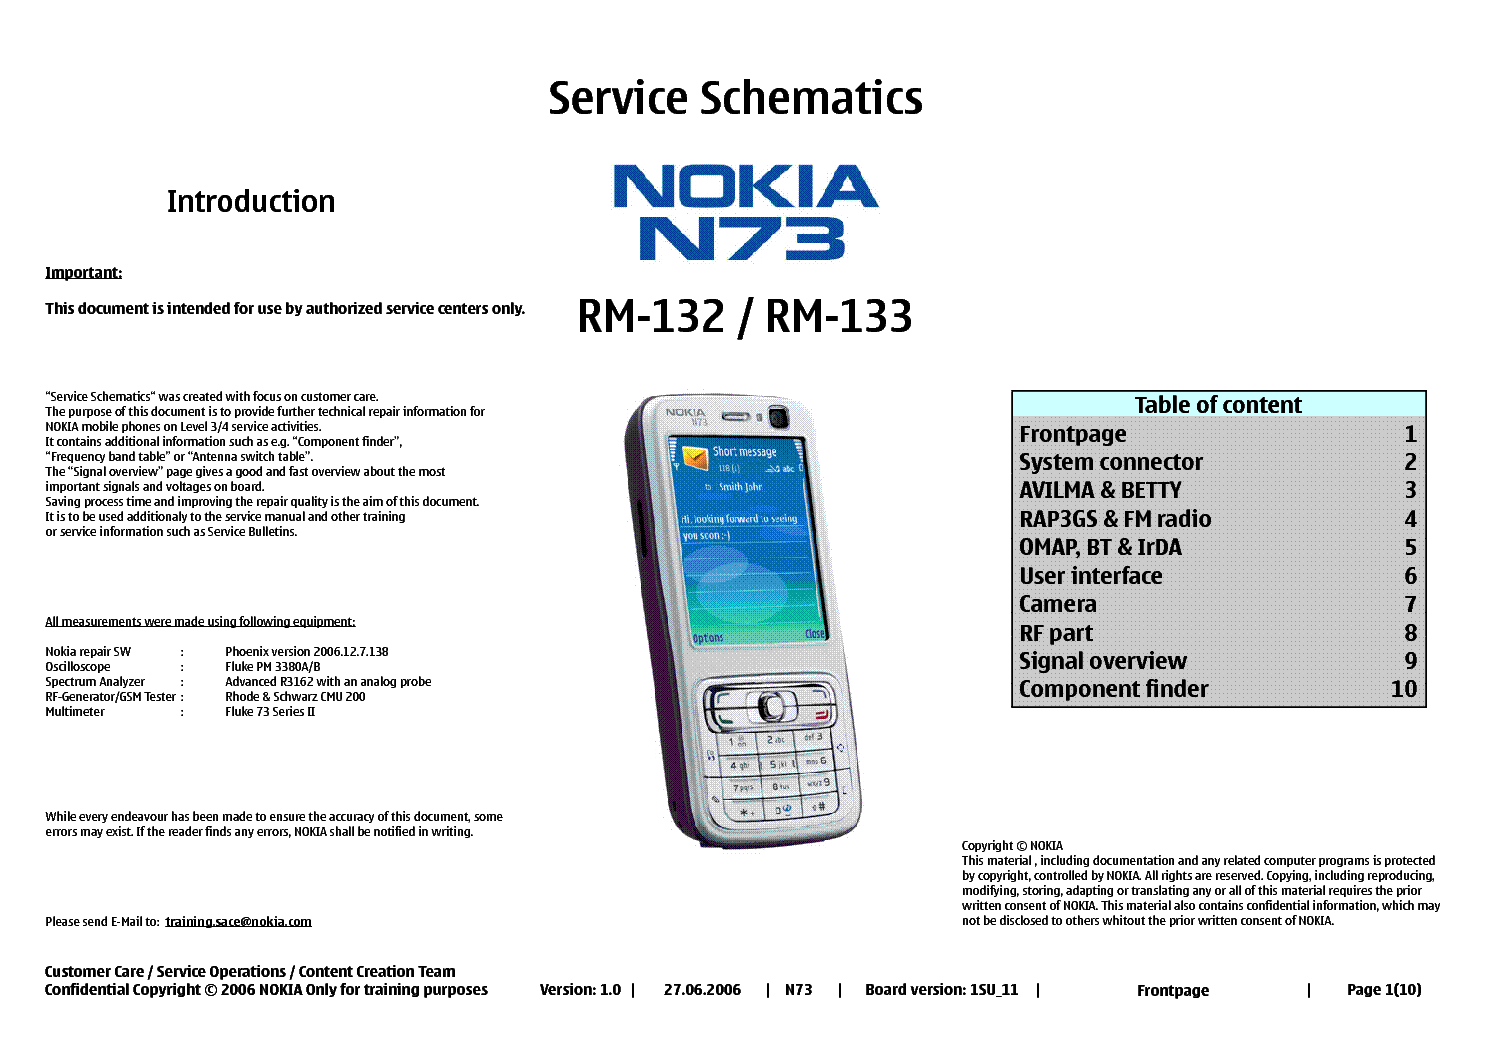 Nokia n73 инструкция скачать